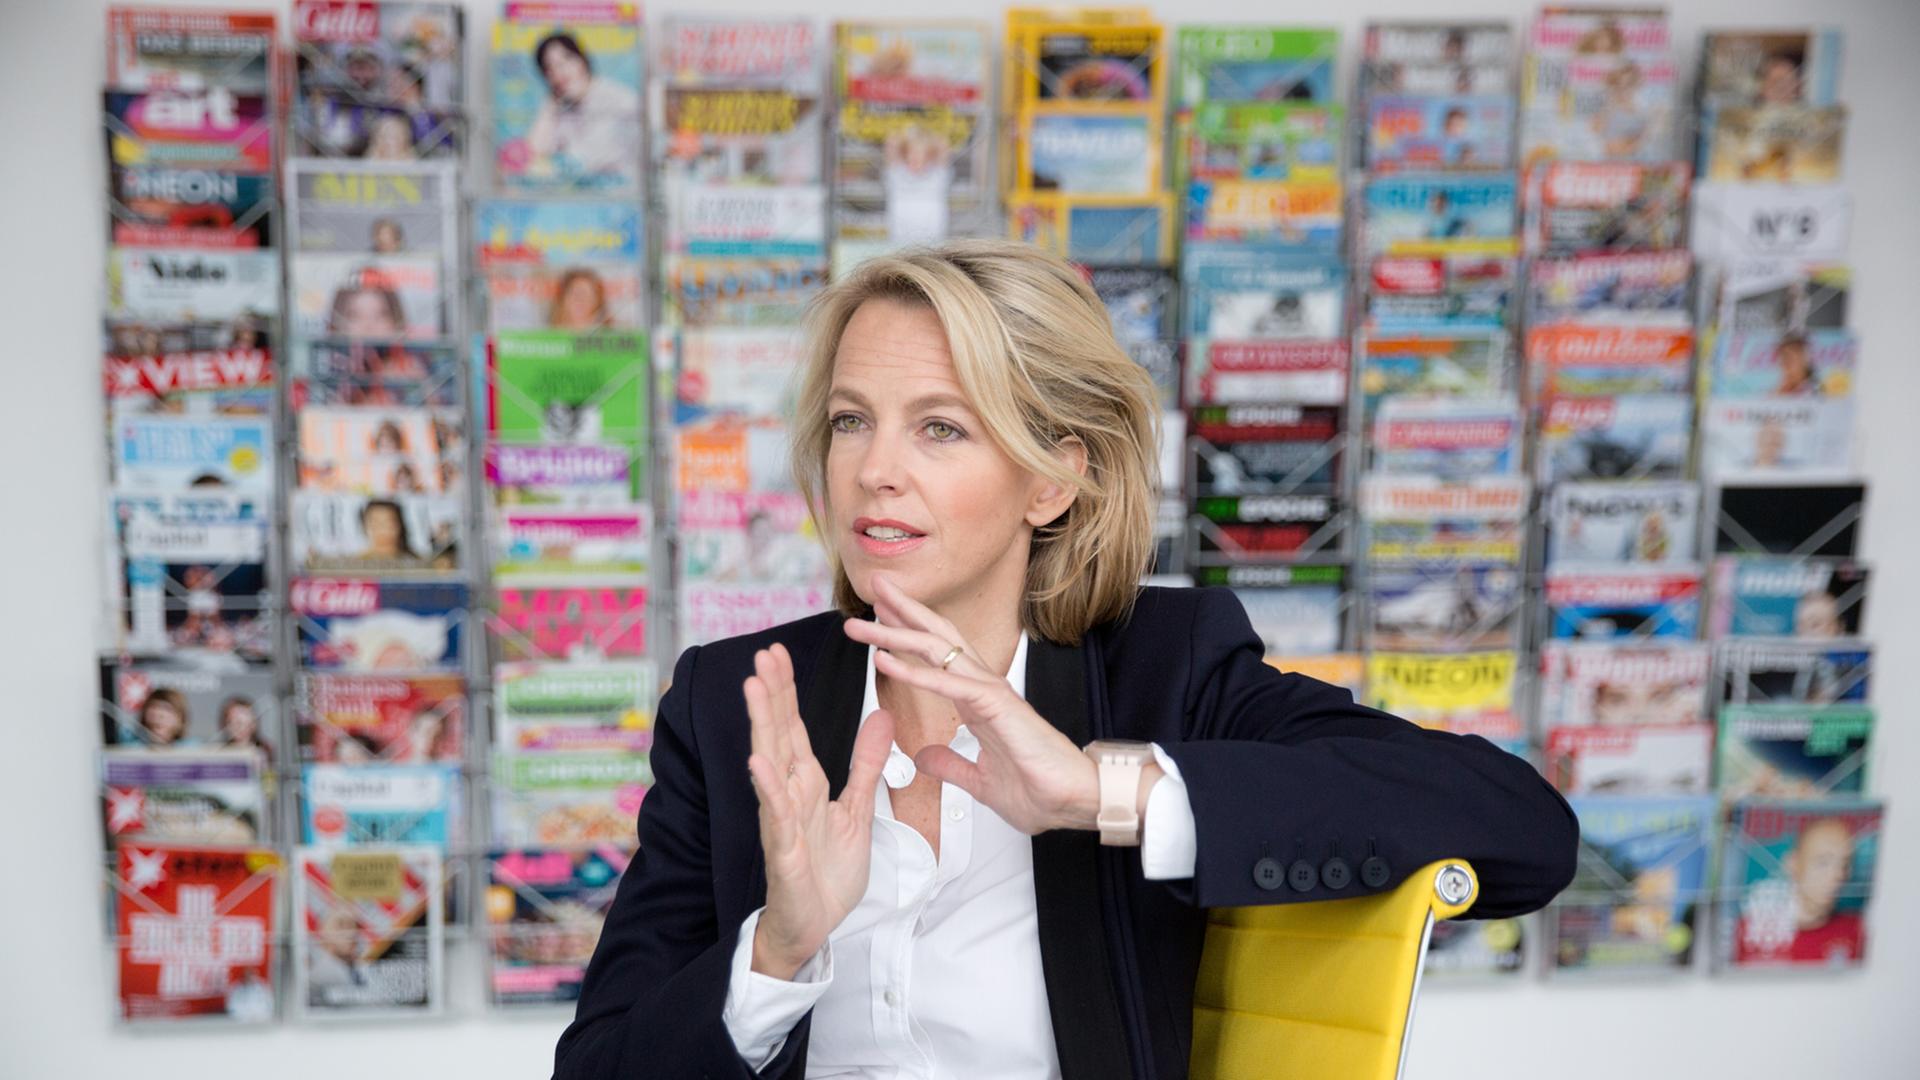 Julia Jäkel, Vorstandsvorsitzende von Gruner + Jahr, in ihrem Büro in Hamburg. Der Verlag gibt Zeitschriften wie "Brigitte", "Stern", "Geo" und "Neon" heraus.